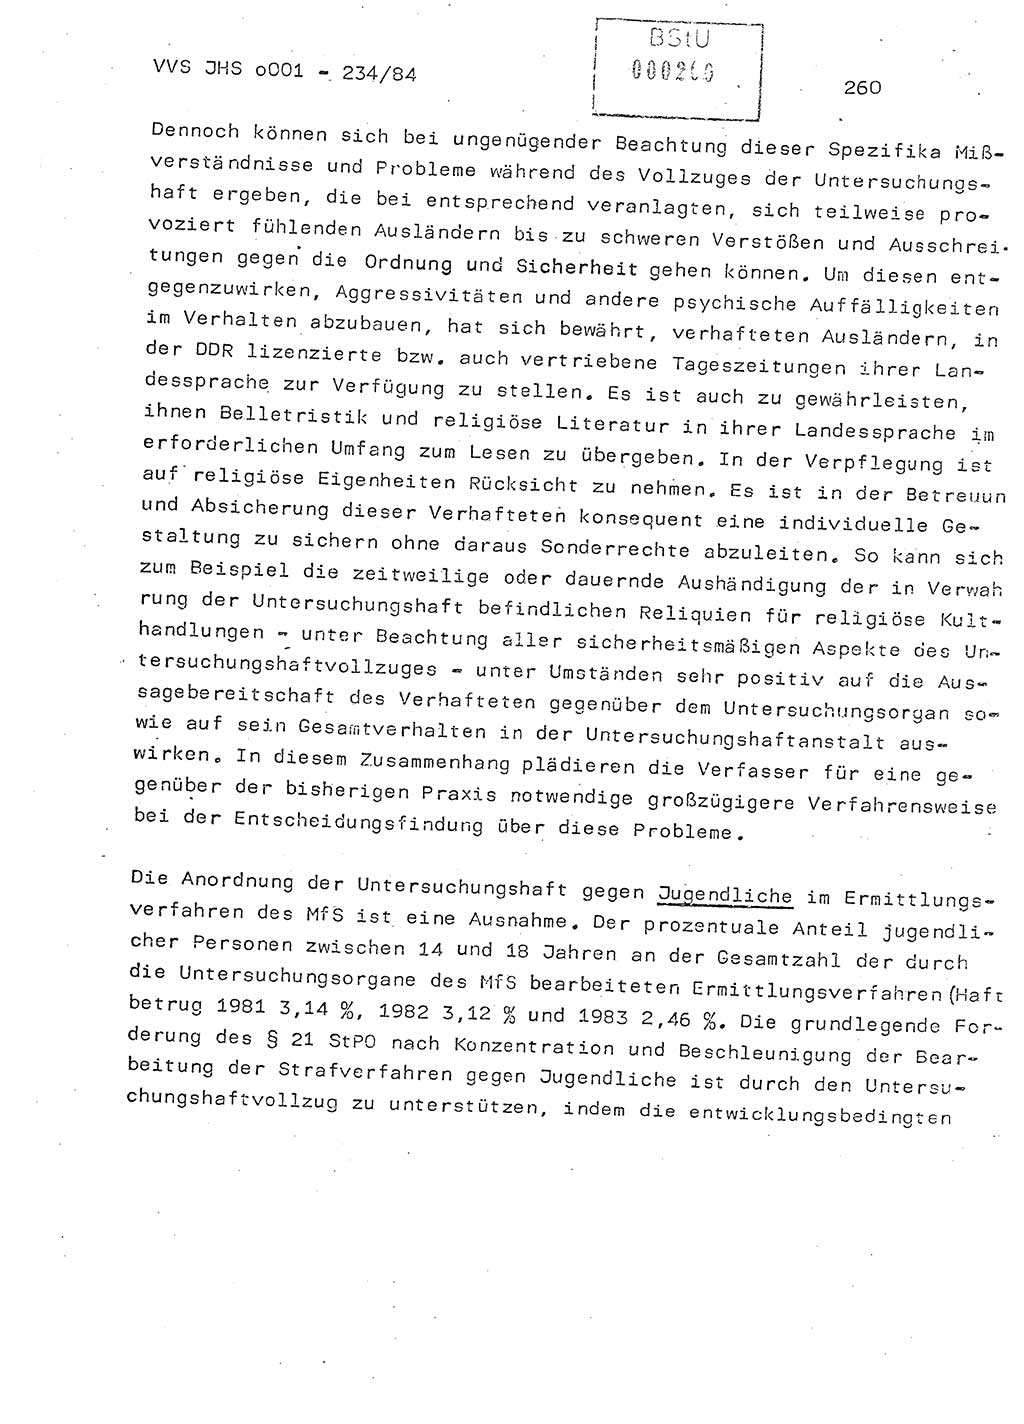 Dissertation Oberst Siegfried Rataizick (Abt. ⅩⅣ), Oberstleutnant Volkmar Heinz (Abt. ⅩⅣ), Oberstleutnant Werner Stein (HA Ⅸ), Hauptmann Heinz Conrad (JHS), Ministerium für Staatssicherheit (MfS) [Deutsche Demokratische Republik (DDR)], Juristische Hochschule (JHS), Vertrauliche Verschlußsache (VVS) o001-234/84, Potsdam 1984, Seite 260 (Diss. MfS DDR JHS VVS o001-234/84 1984, S. 260)